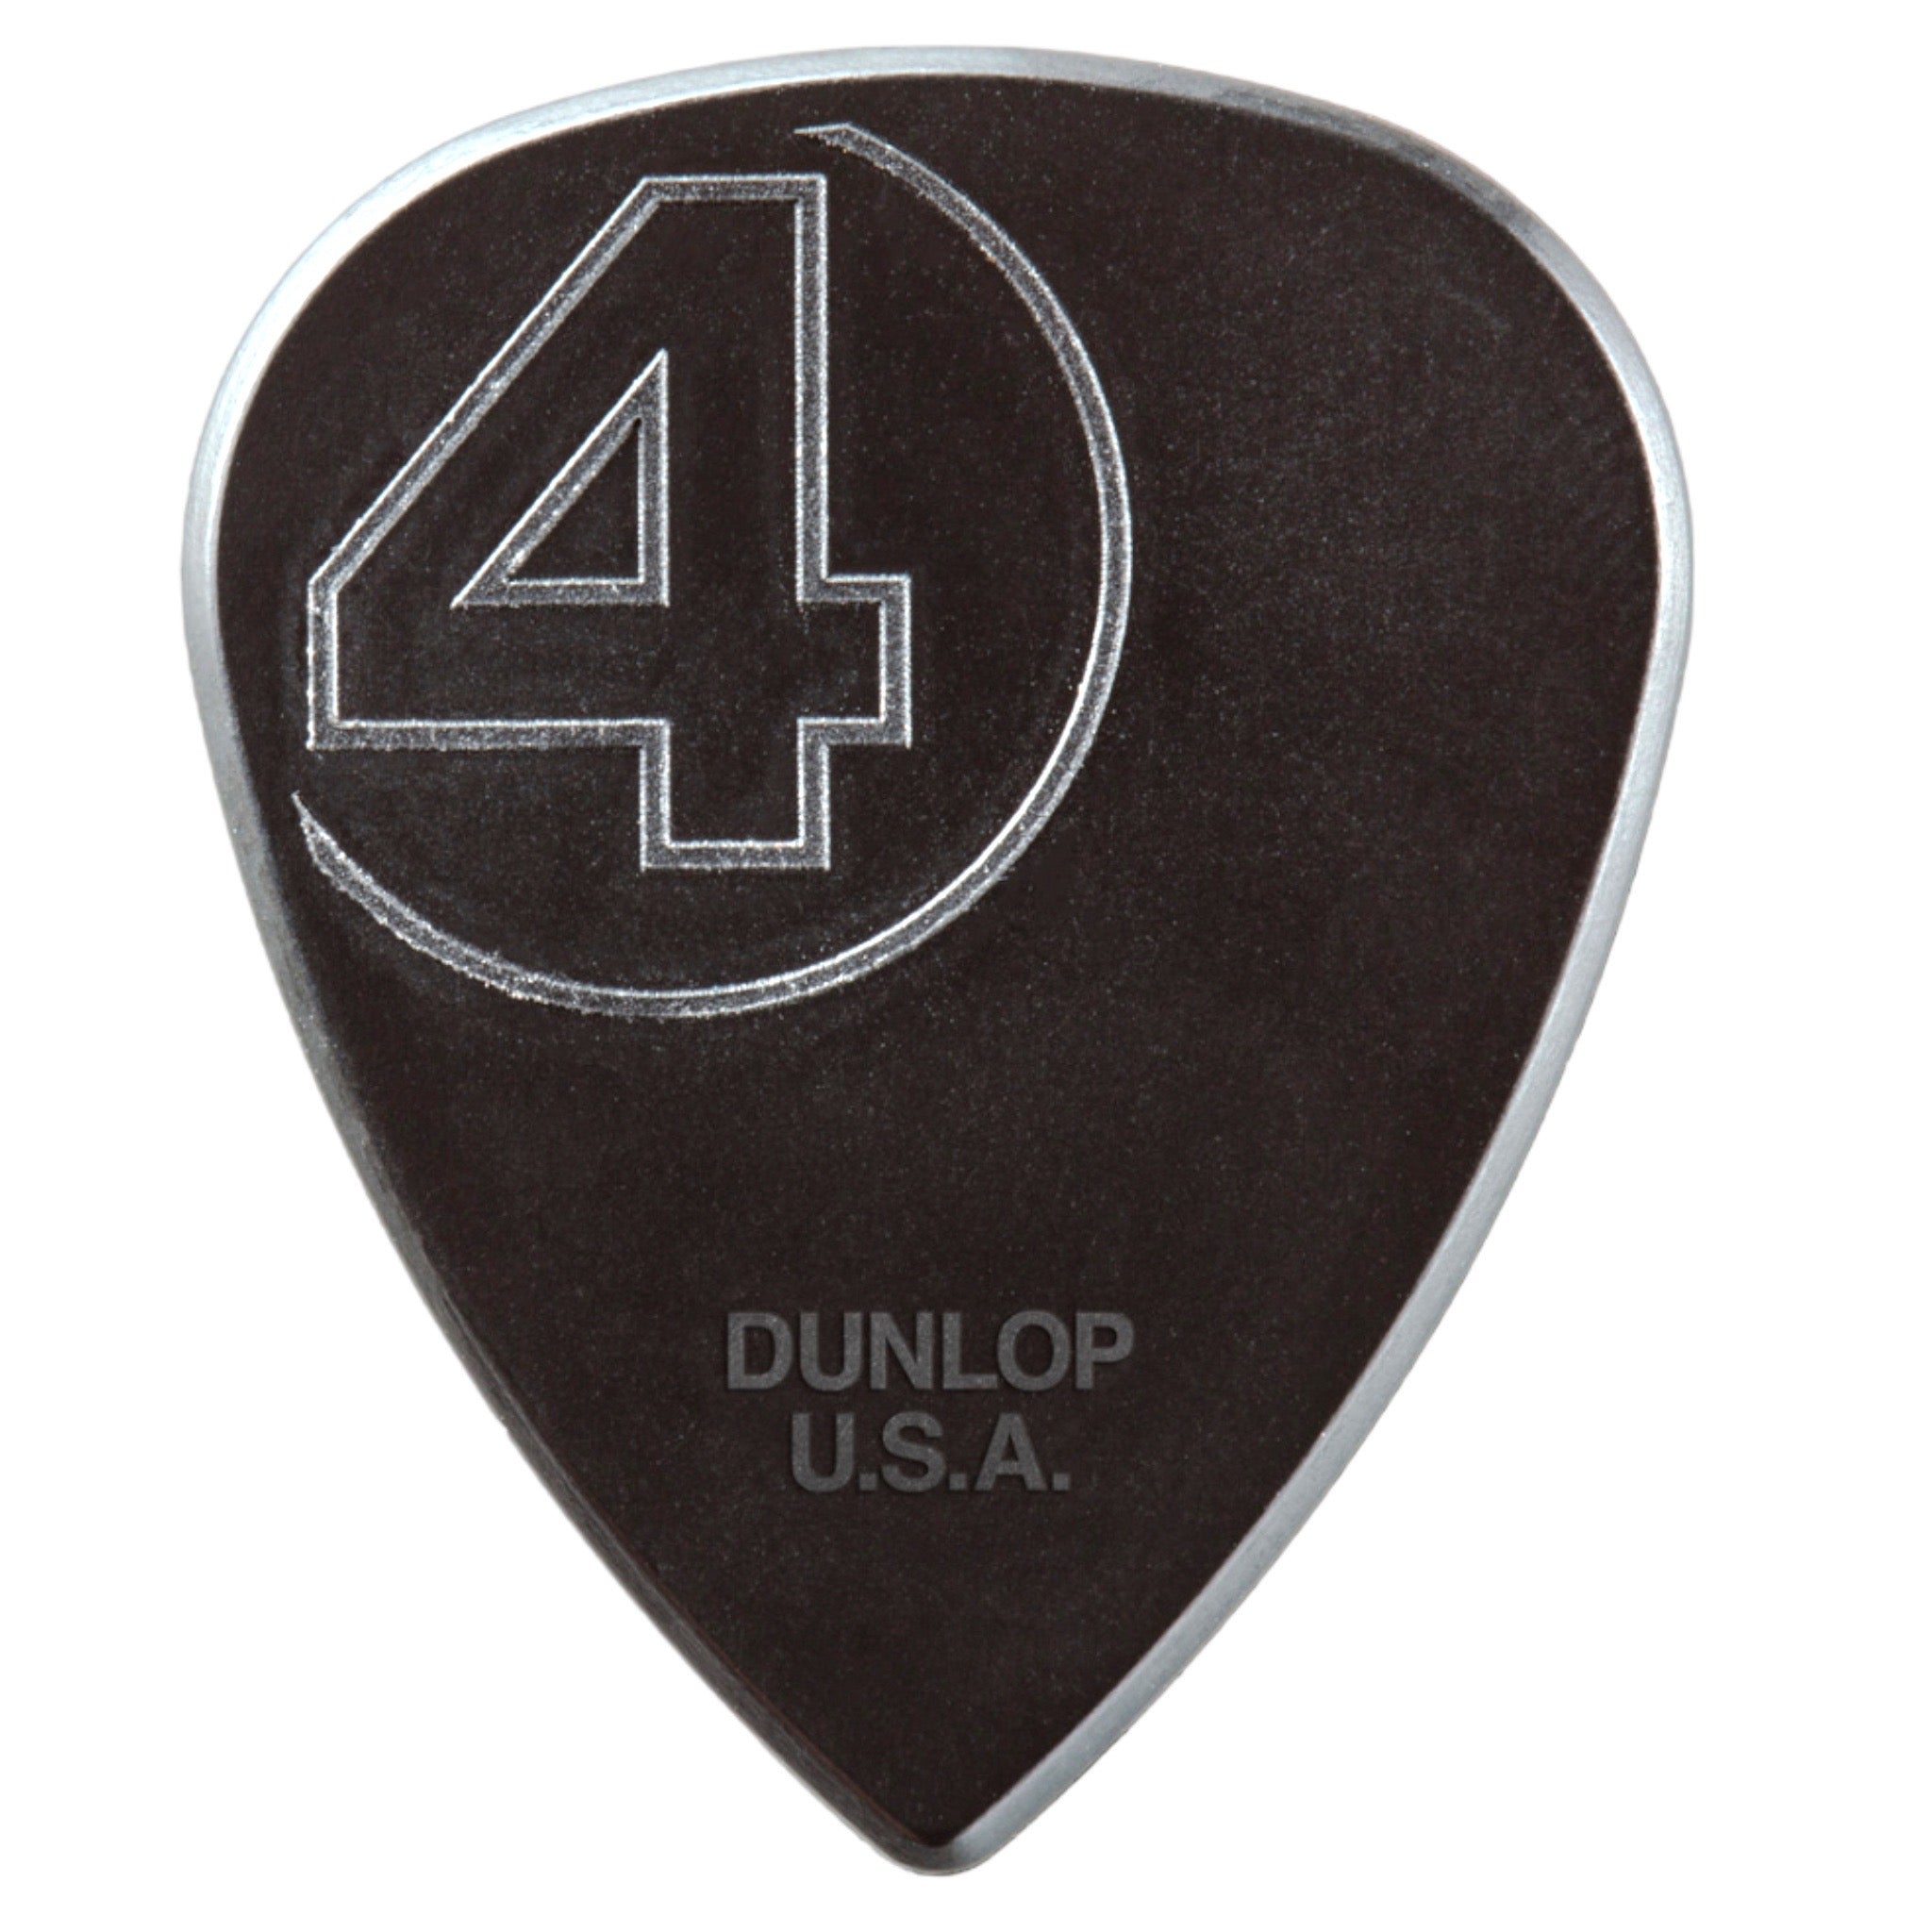 Jim Dunlop 1.38mm Jim Root Nylon Guitar Picks (6-Pack)